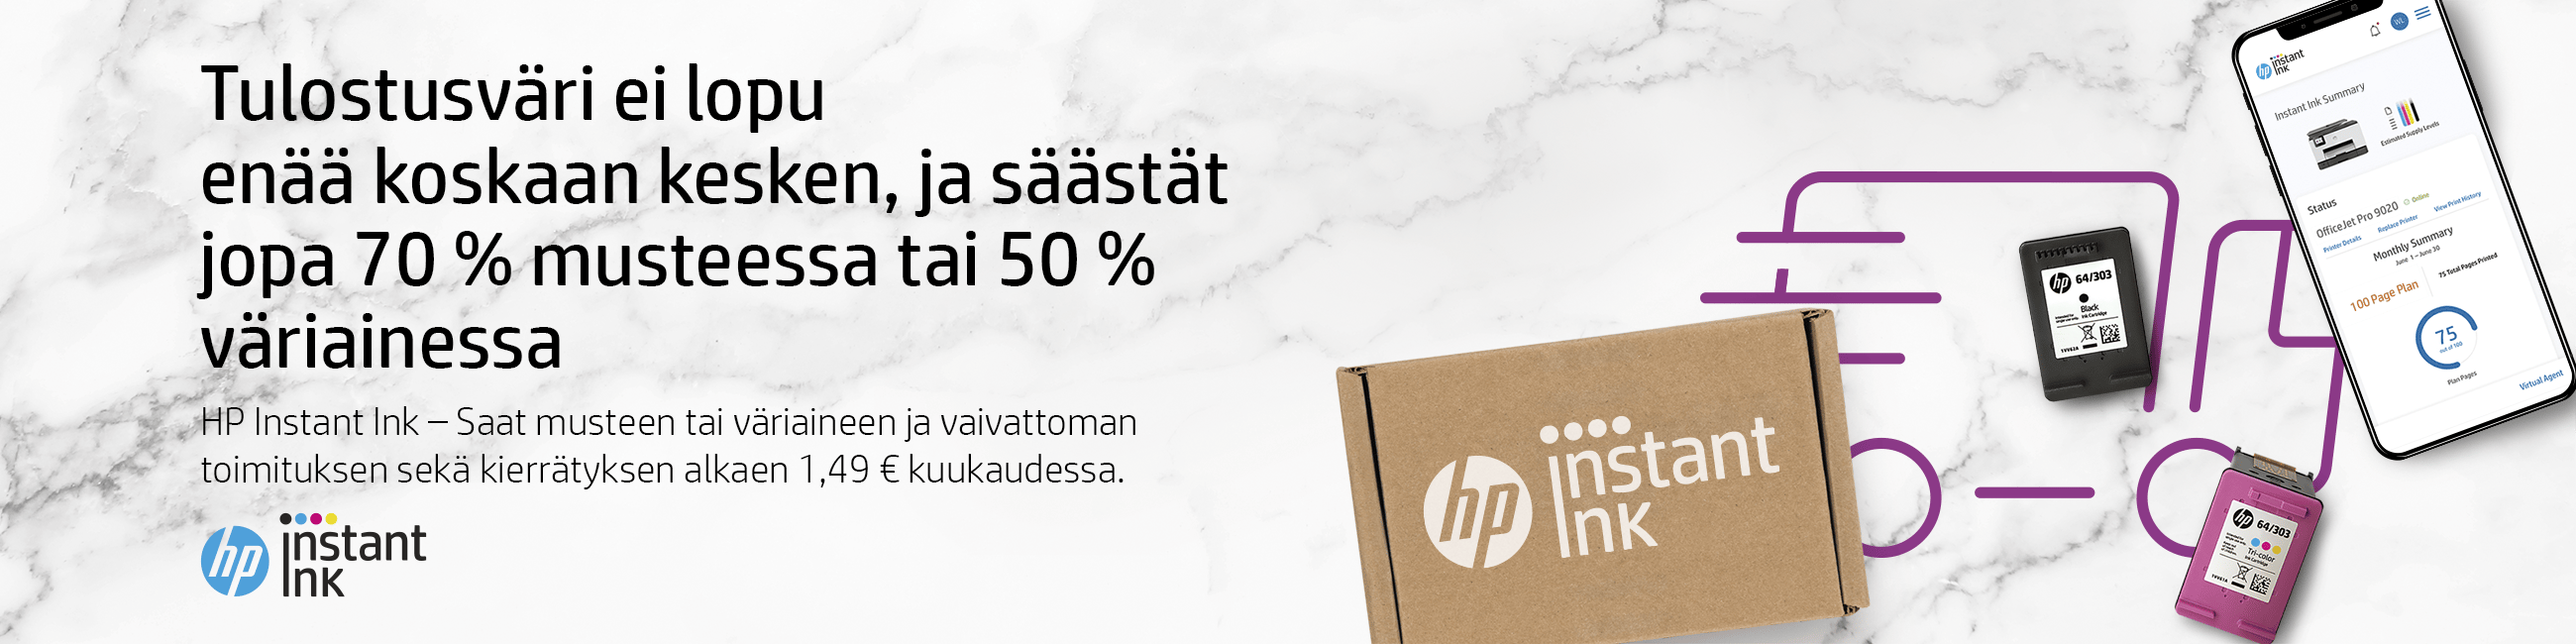 HP Instant Ink - Tulostusväri ei lopu enää koskaan kesken, ja säästät jopa 70 % musteessa tai 50 % väriaineessa. Saat musteen tai väriaineen ja vaivattoman toimituksen sekä kierrätyksen alkaen 1,49 € kuukaudessa.